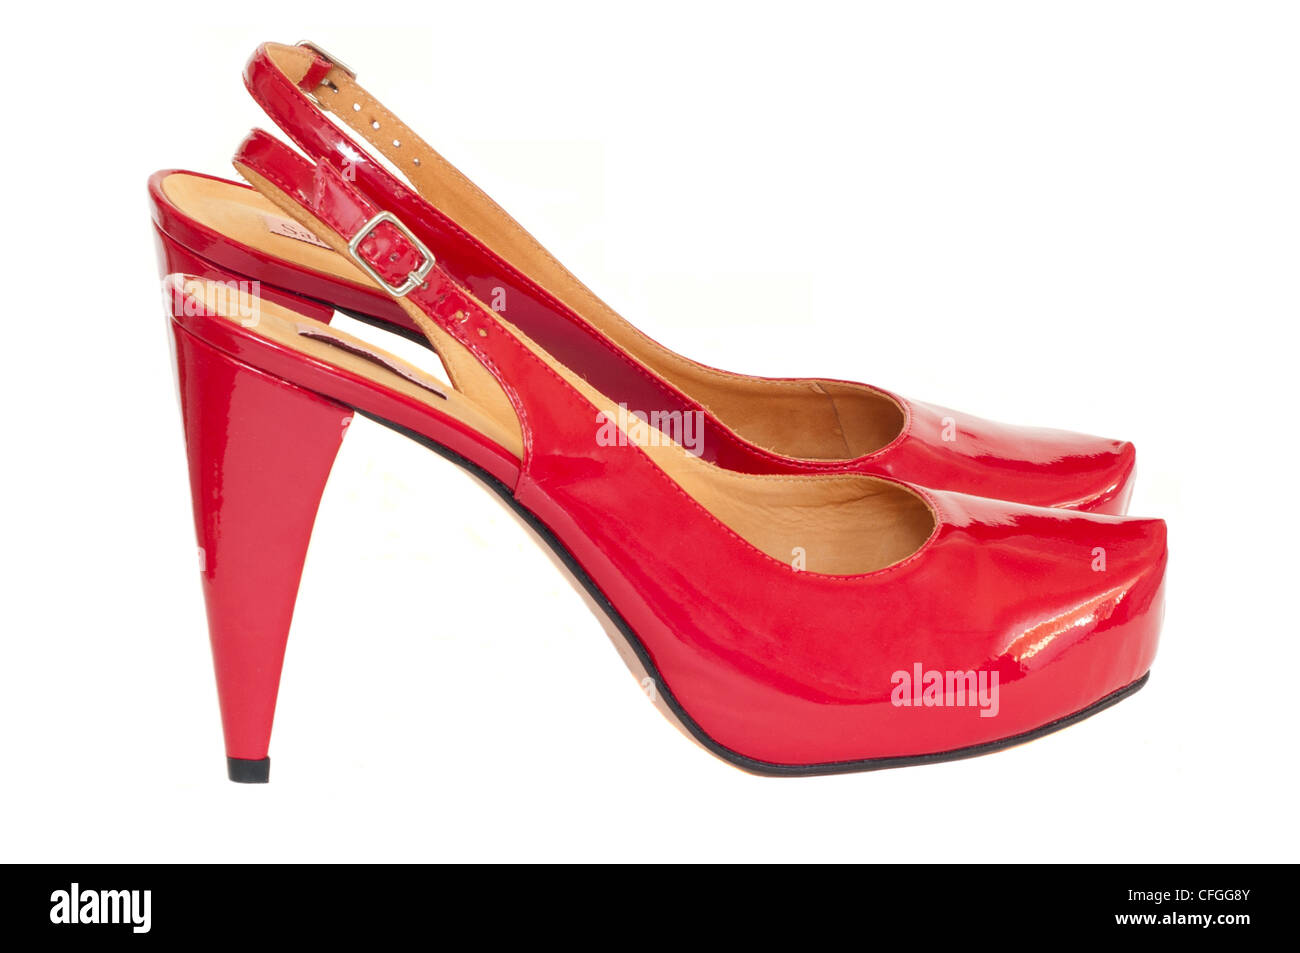 Paire de chaussures femmes talon haut rouge Photo Stock - Alamy